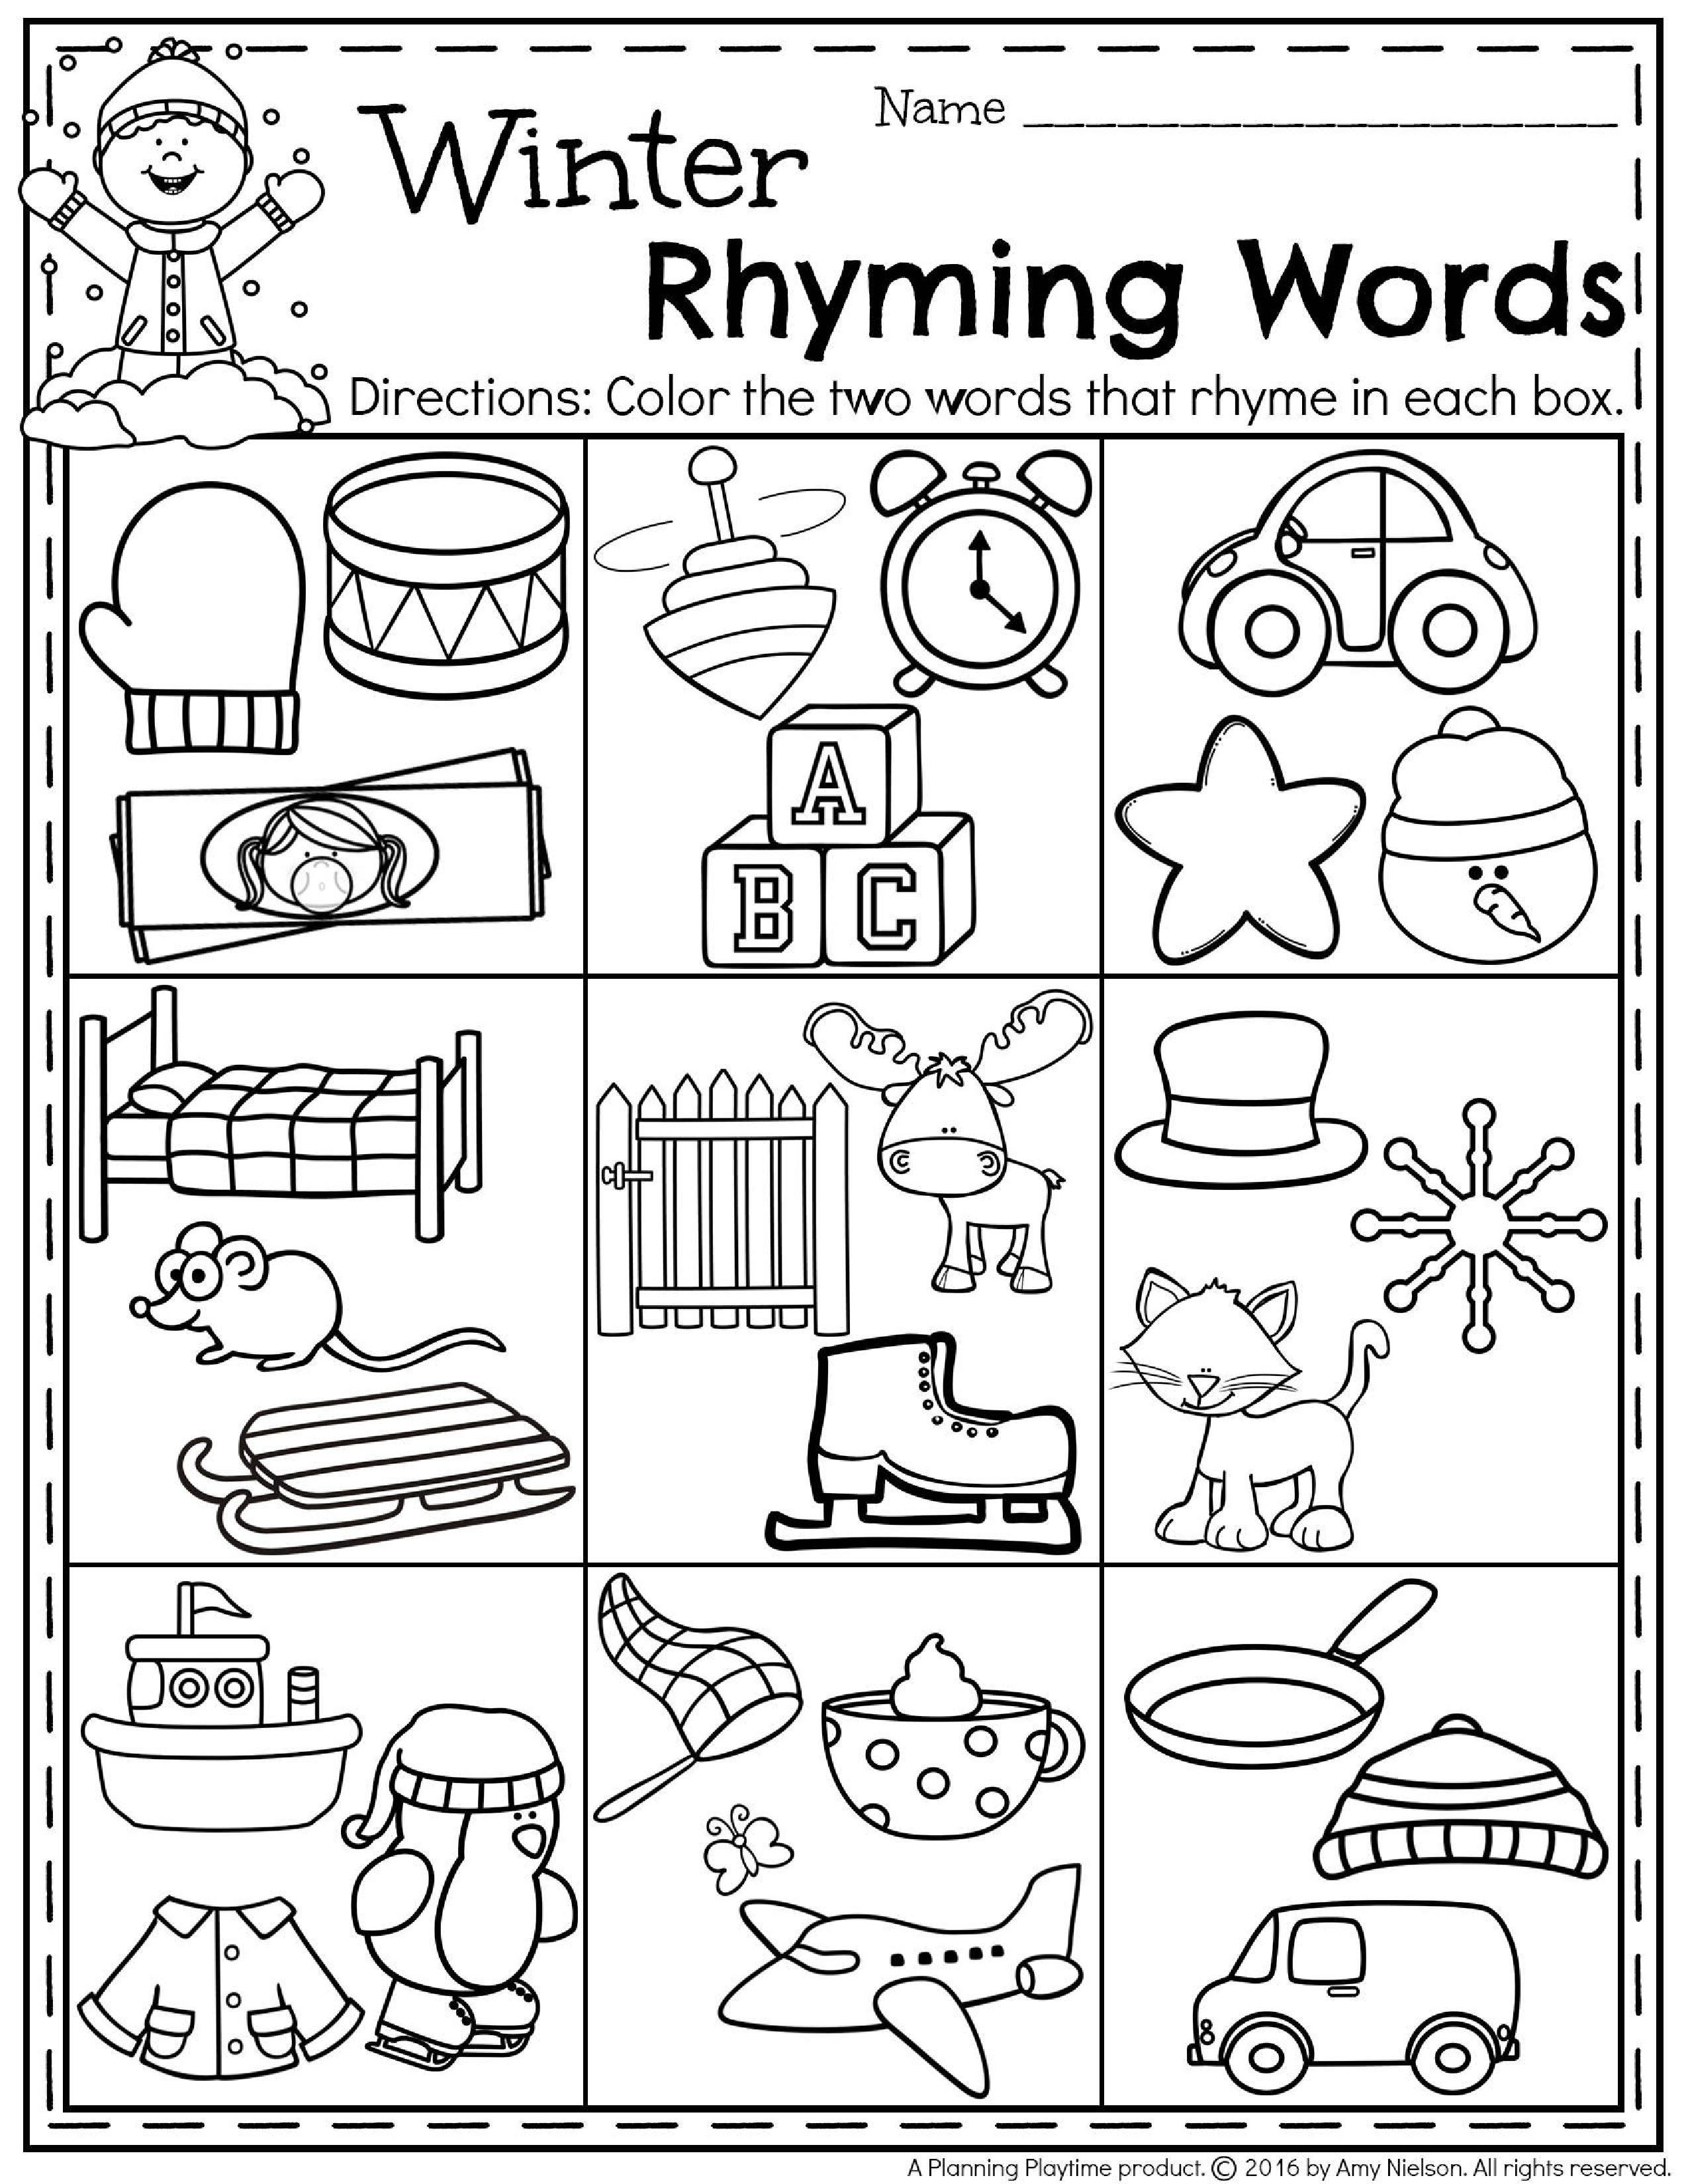 Free Printable Worksheets For Preschool